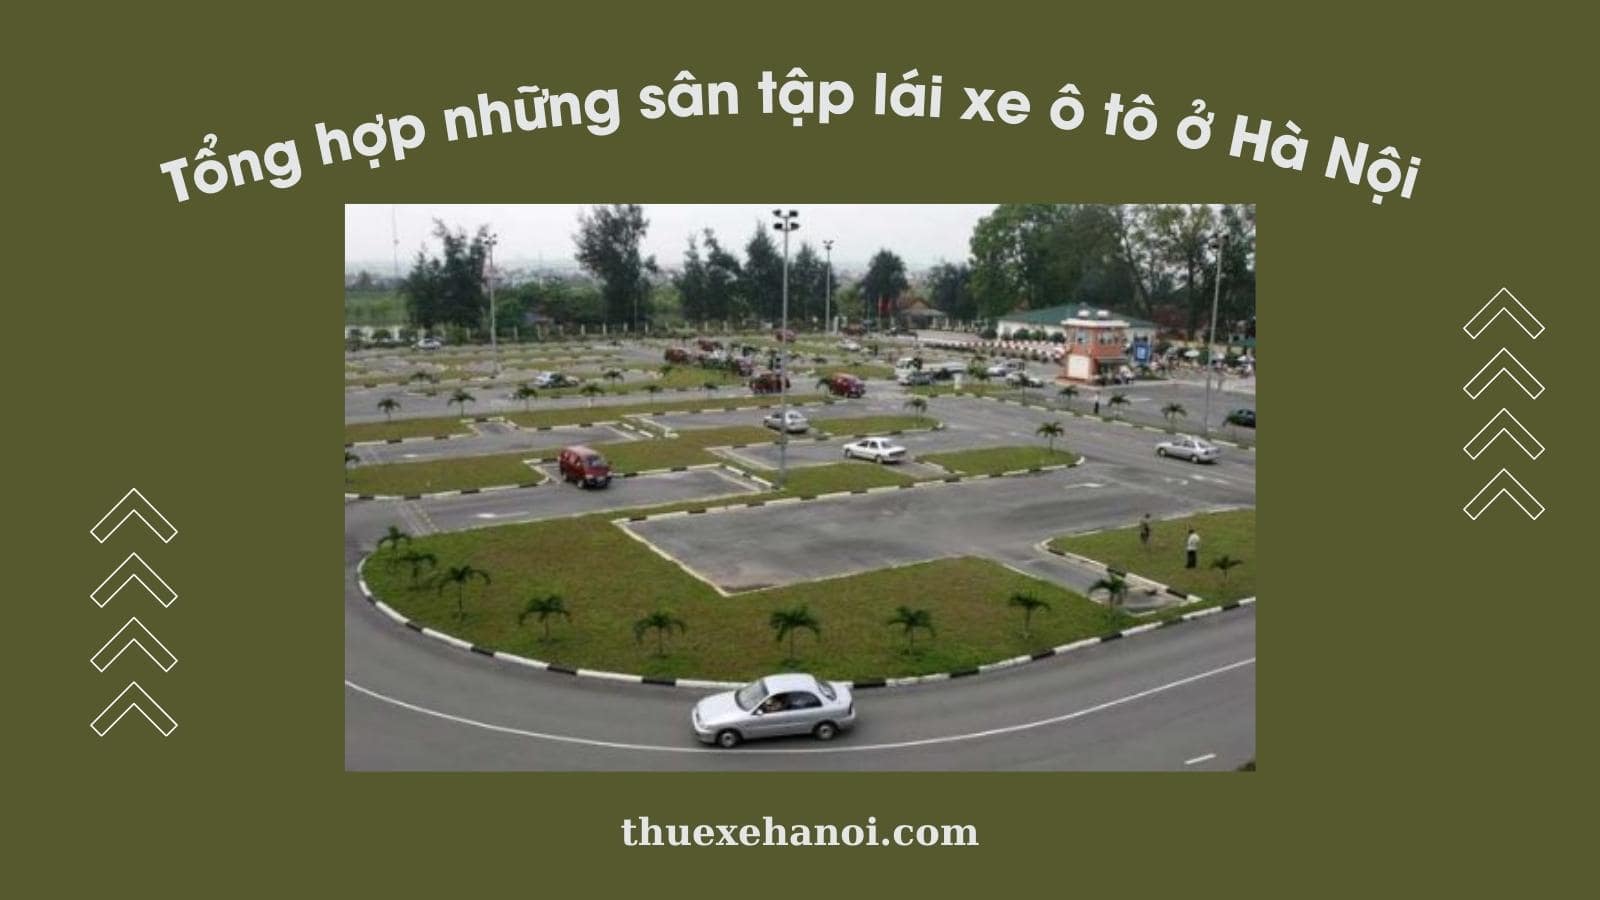 Tổng hợp những sân tập lái xe ô tô ở Hà Nội